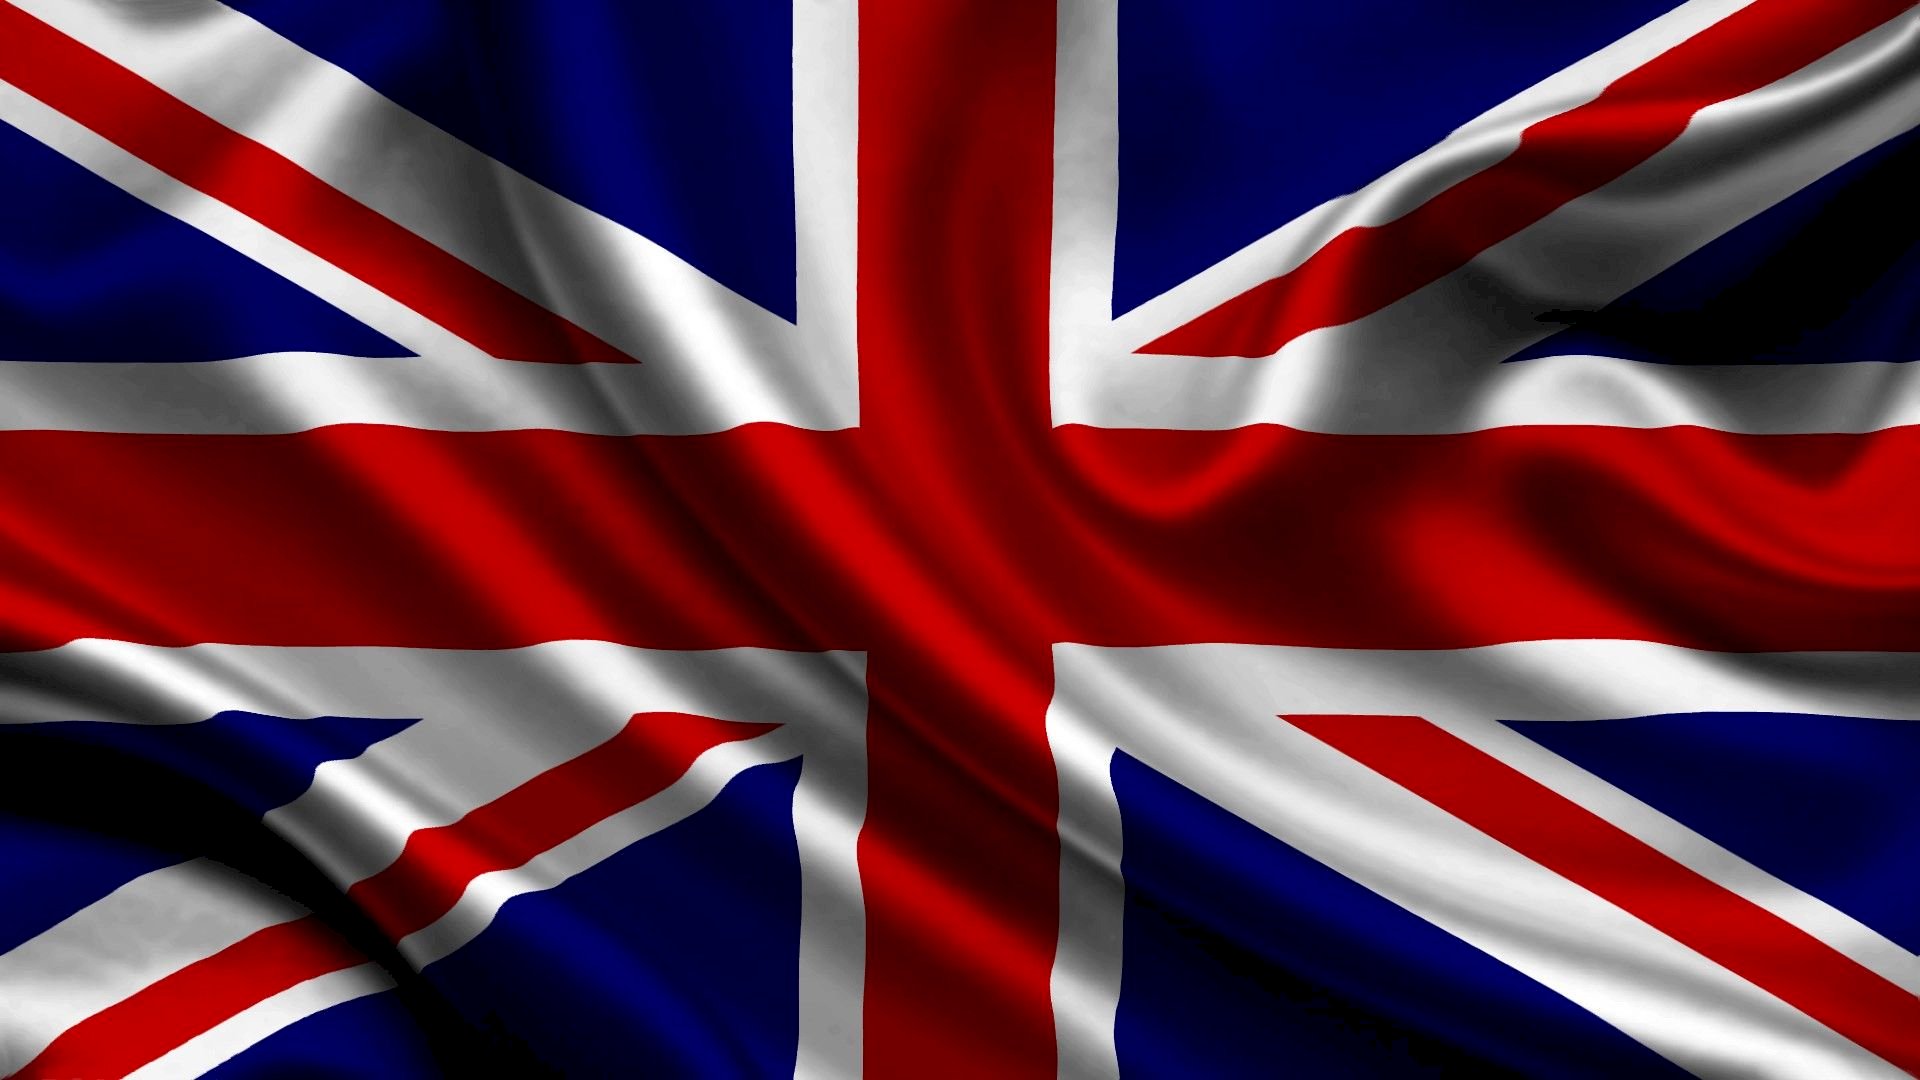 Bạn đang tìm kiếm hình nền cờ quốc gia Anh đơn giản và tinh tế? Với bộ sưu tập hình nền đầy đủ của chúng tôi, tất cả các phiên bản như dọc, ngang hoặc phù hợp với thiết bị của bạn, sẽ giúp bạn tìm được một bức ảnh đẹp để sử dụng!